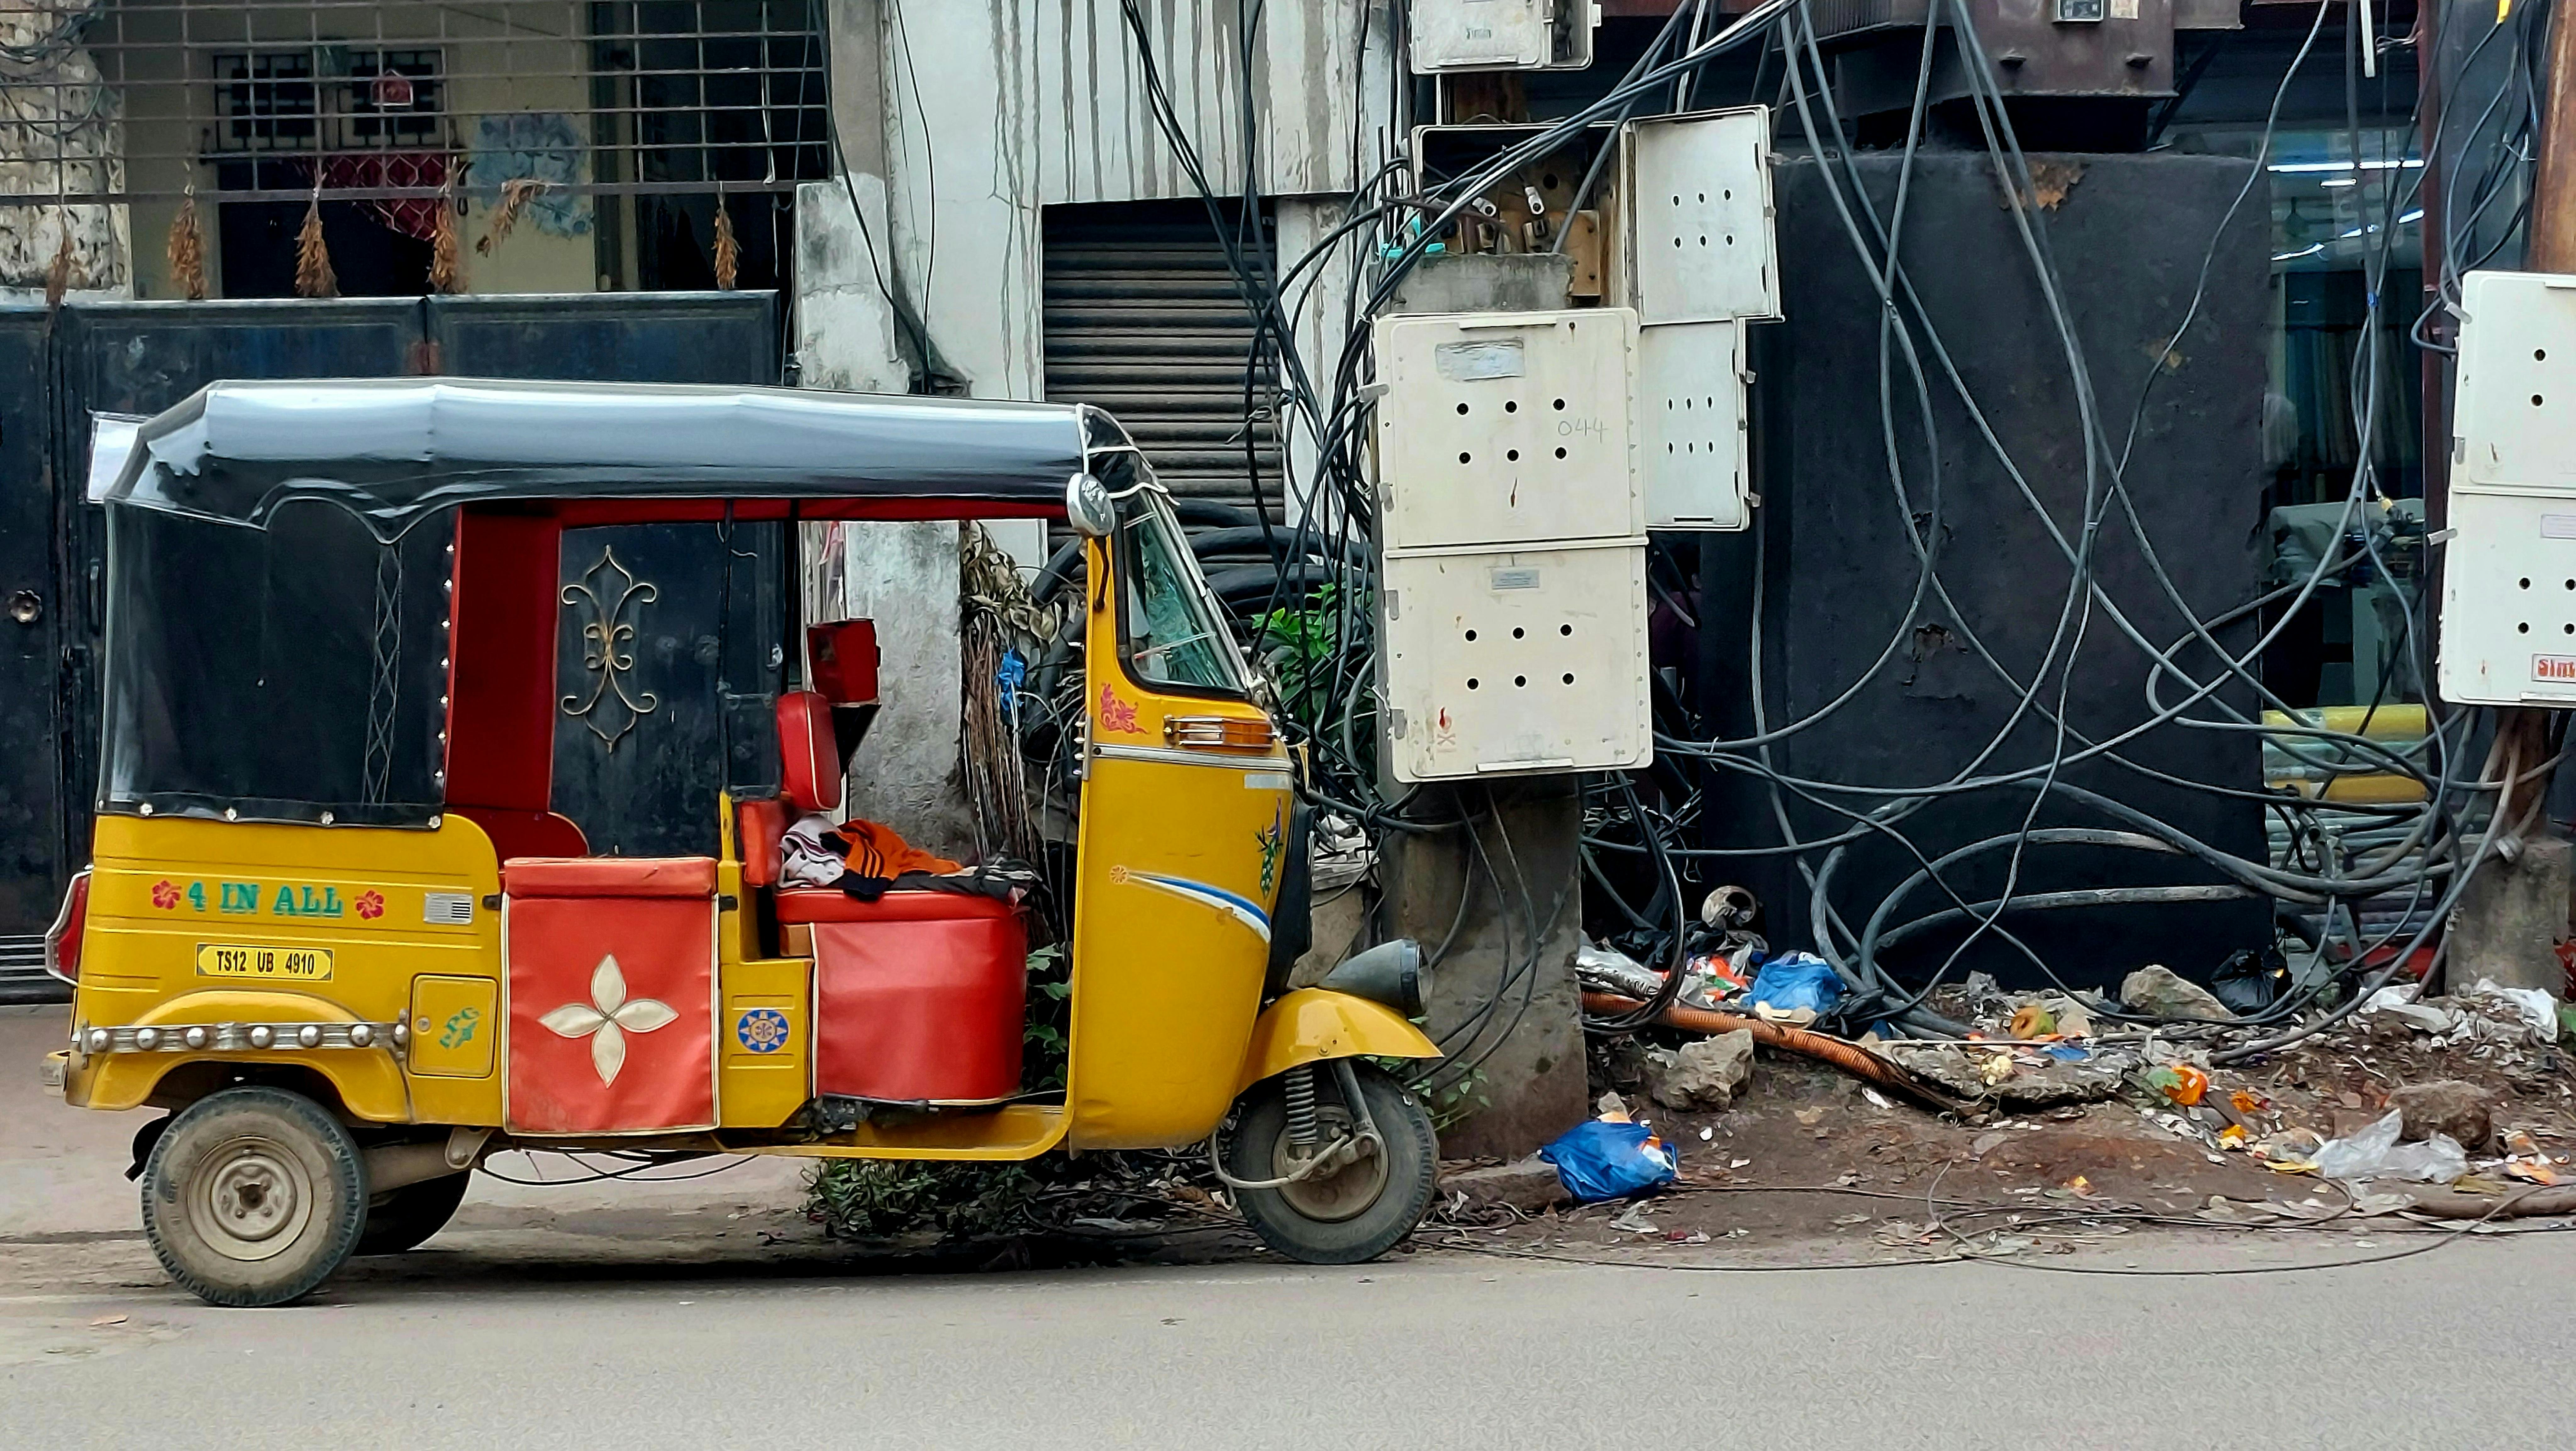 Tuk Tuk e cavi elettrici, per lo più sospesi in alto tra i palazzi, sono una costante nelle strade di Hyderabad..